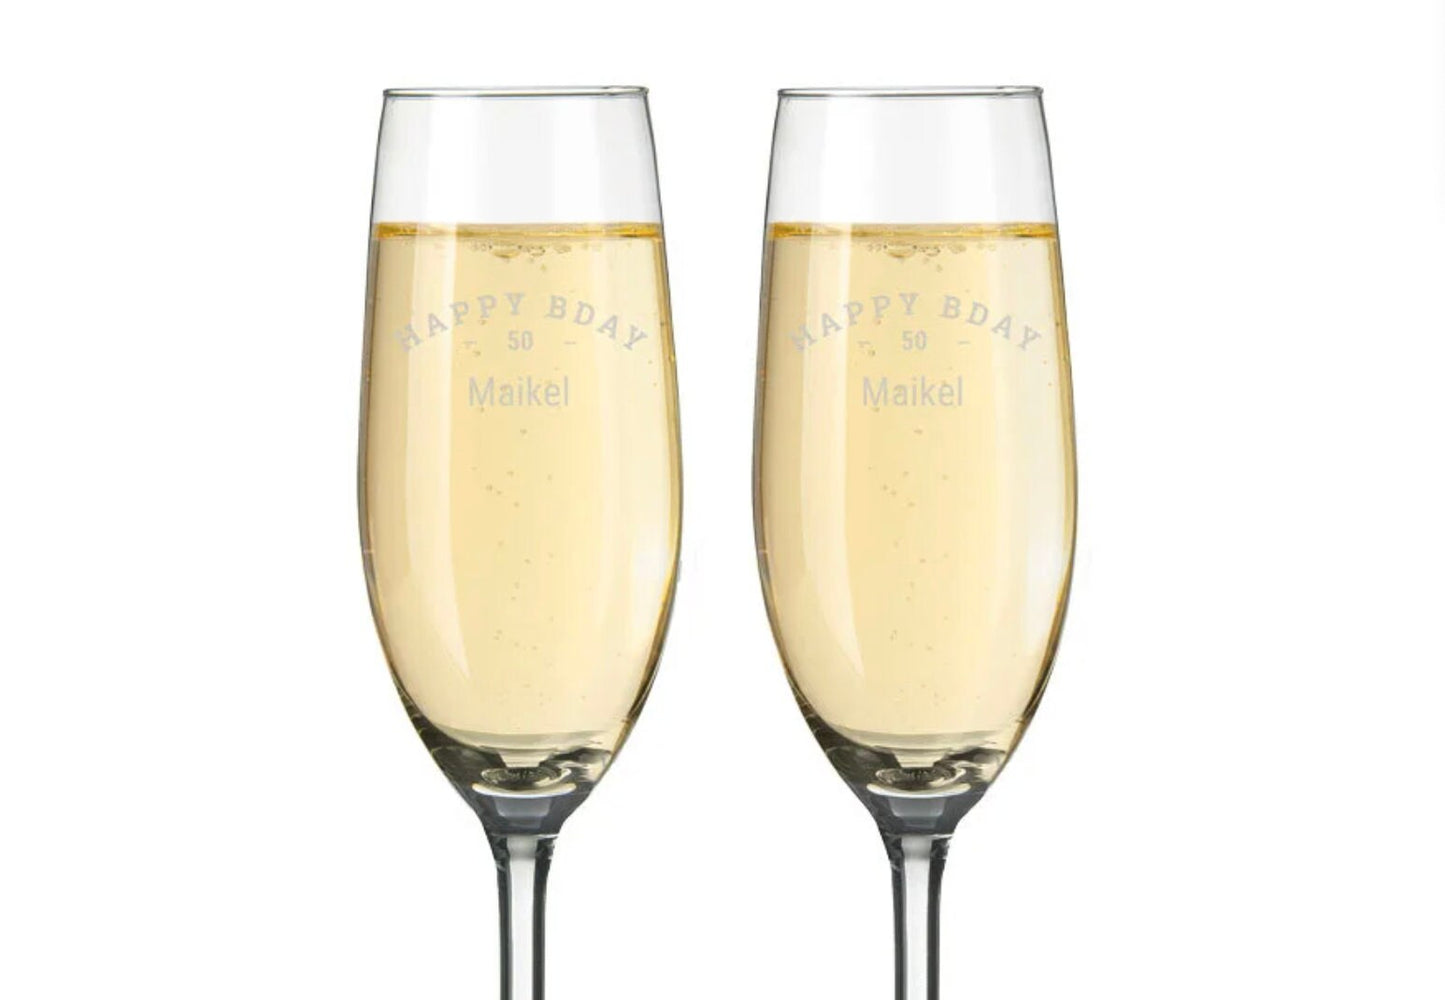 flute da champagne spumante prosecco personalizzati con incisione laser nomi, loghi invia il tuo design regalo / bar / ristoranti / hotel